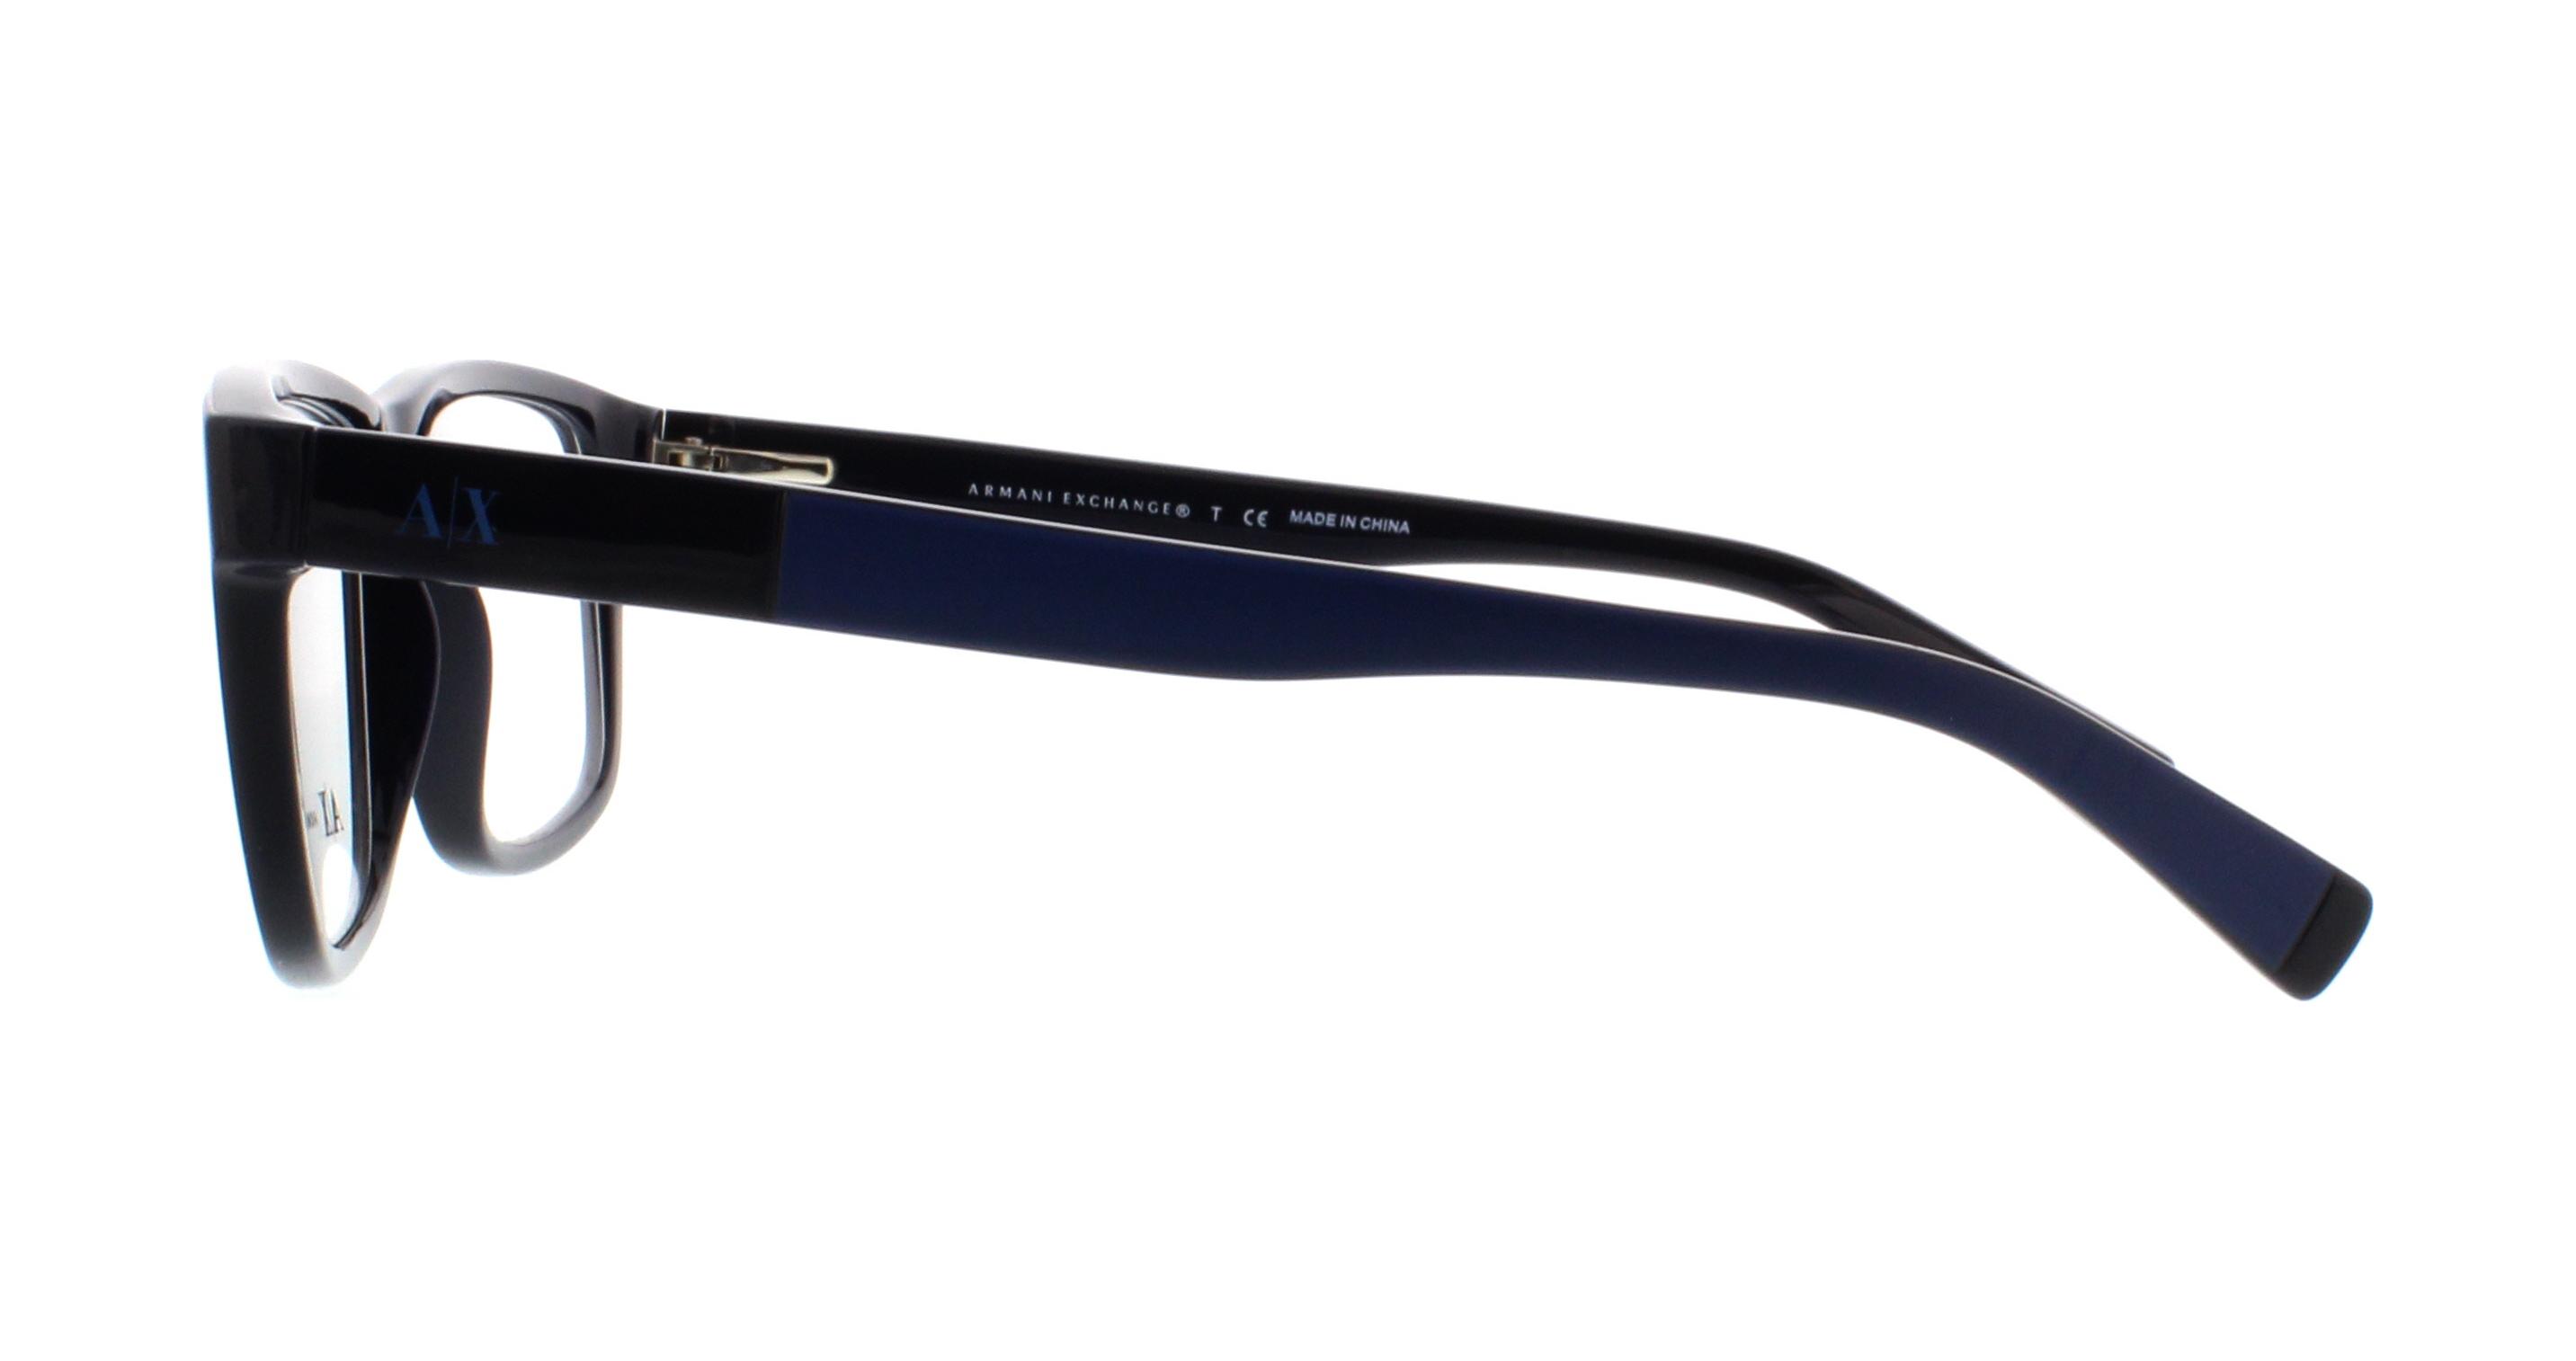 Exchange Eyeglasses Frames Designer Outlet. AX3025 Armani